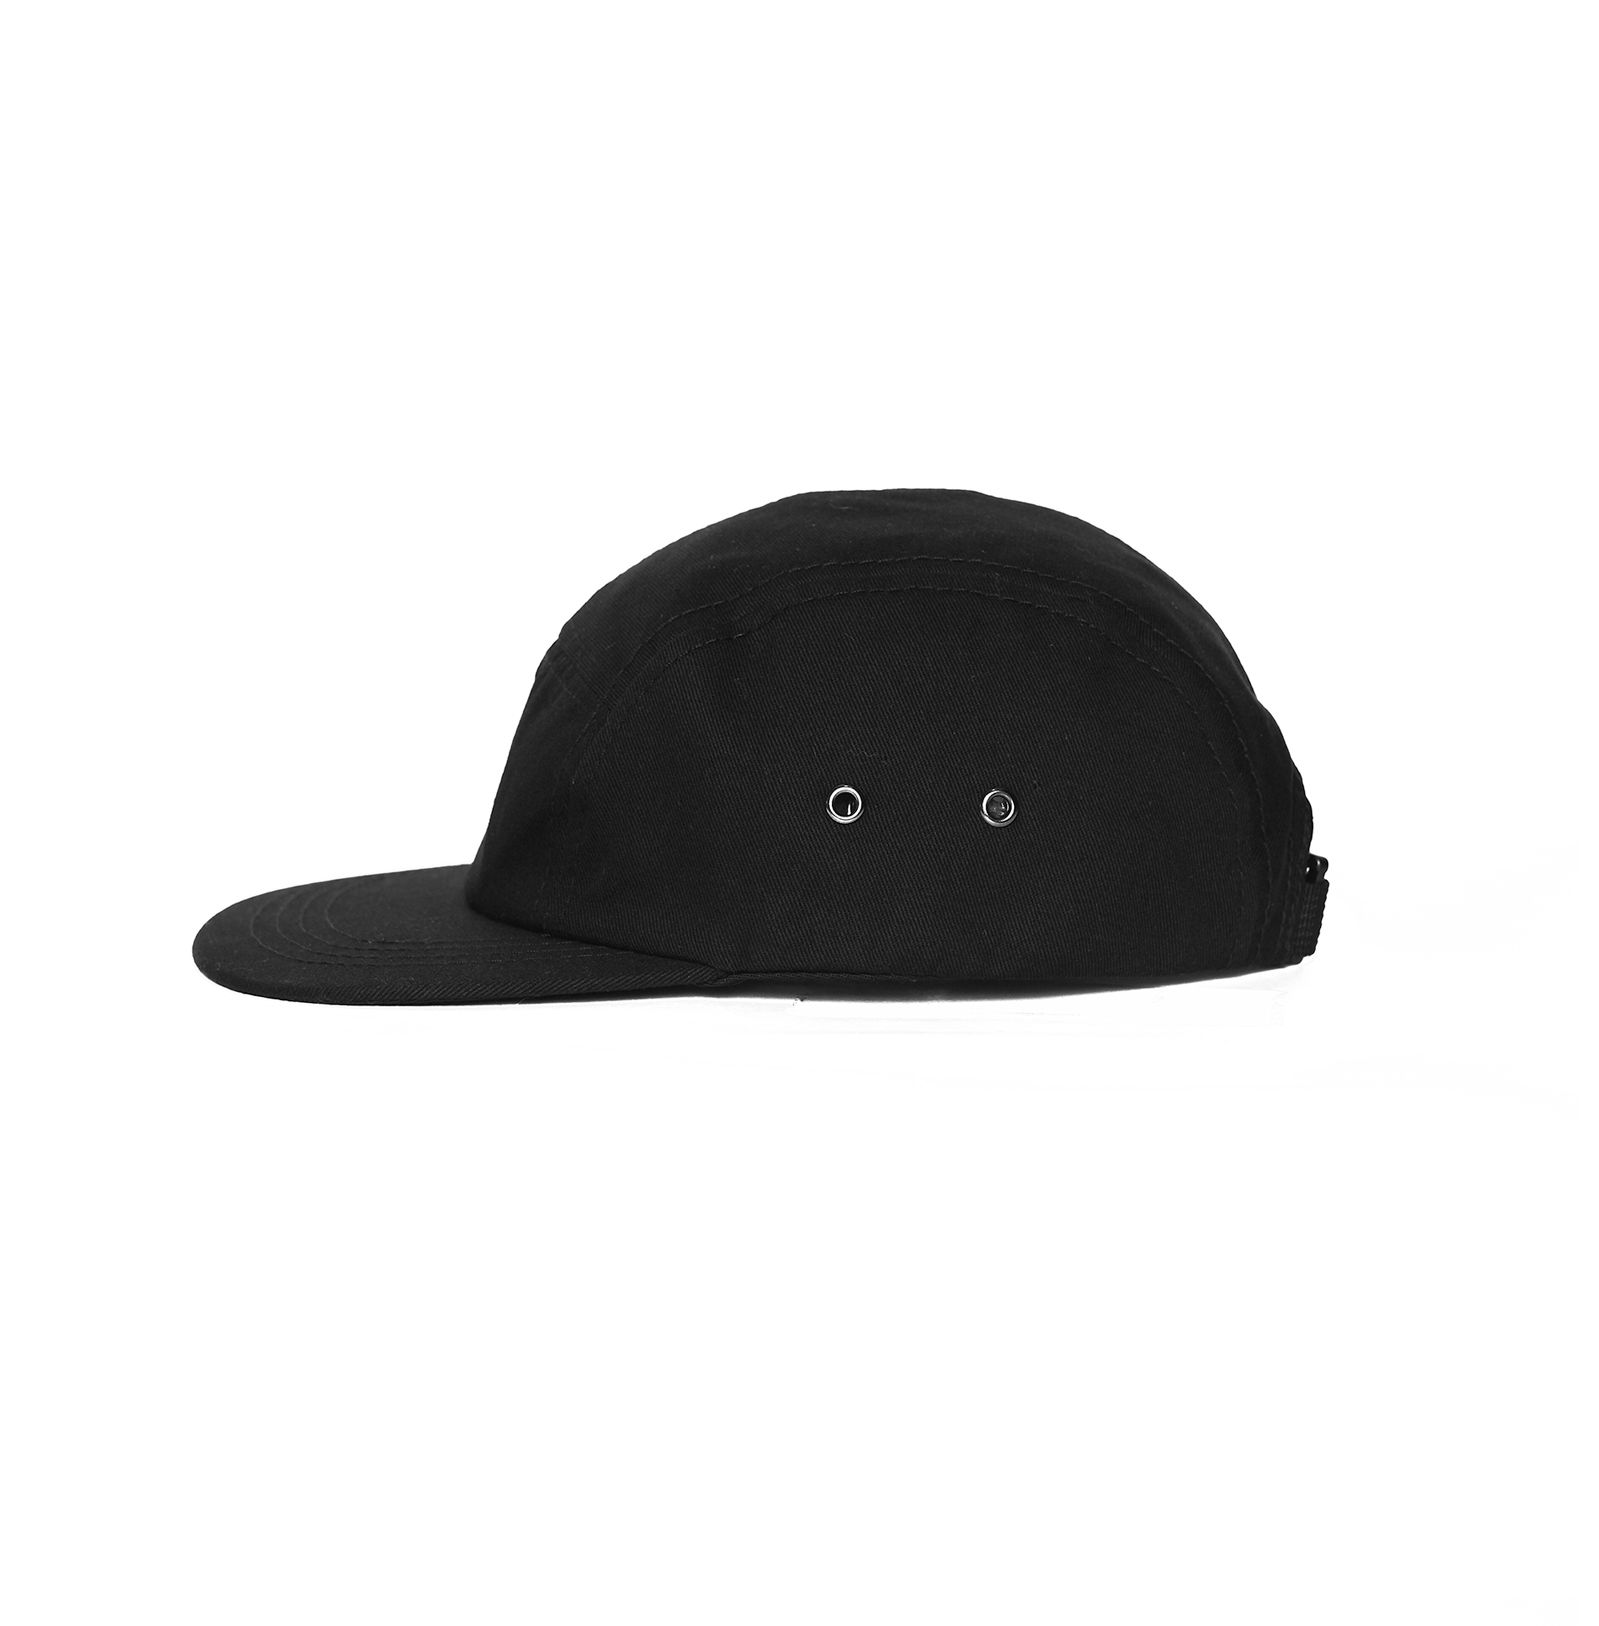 KIT CAMPER CAP - JET BLACK